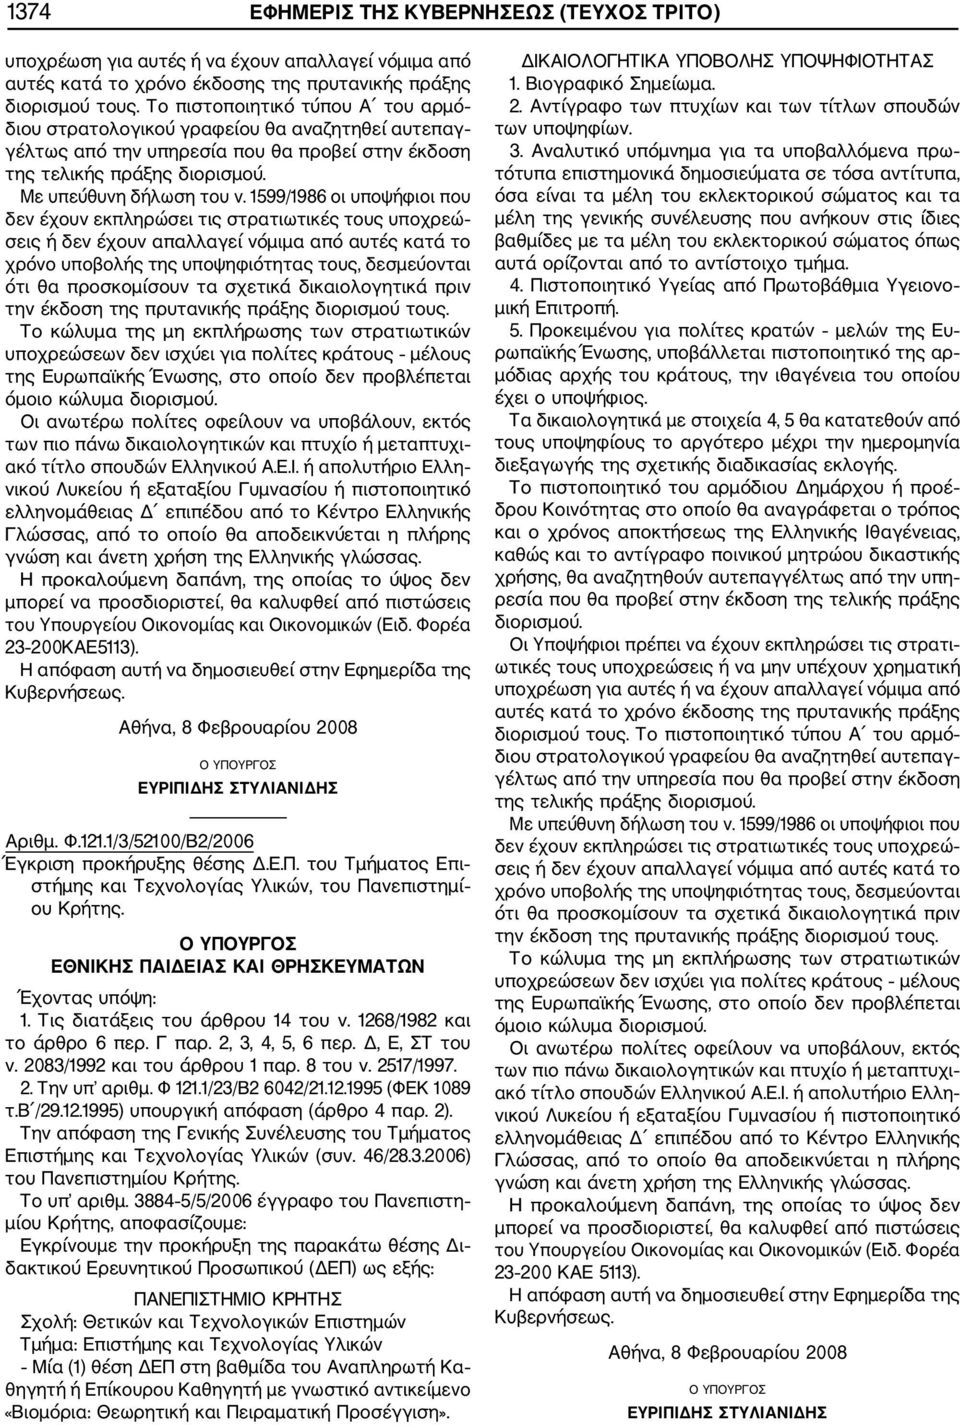 2083/1992 Την απόφαση της Γενικής Συνέλευσης του Τμήματος Επιστήμης και Τεχνολογίας Υλικών (συν. 46/28.3.2006) του Πανεπιστημίου Κρήτης. Το υπ αριθμ.